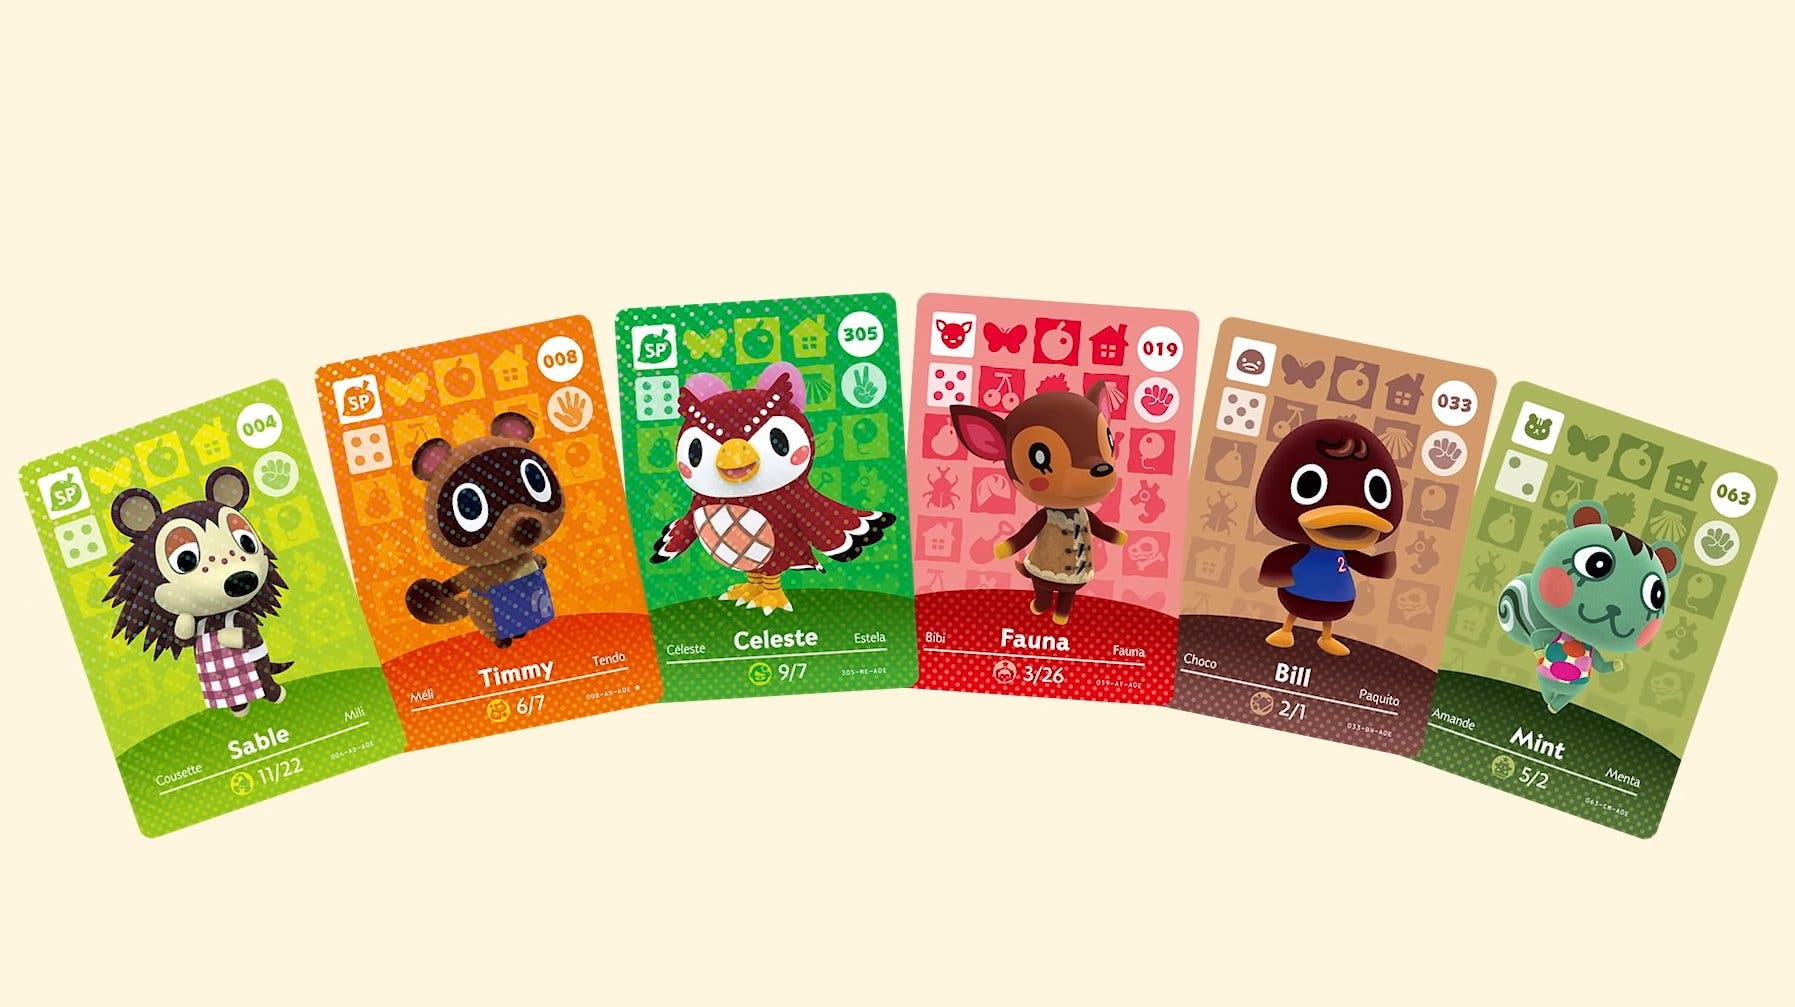 Nintendo confirma que va a seguir vendiendo cartas amiibo de Animal Crossing